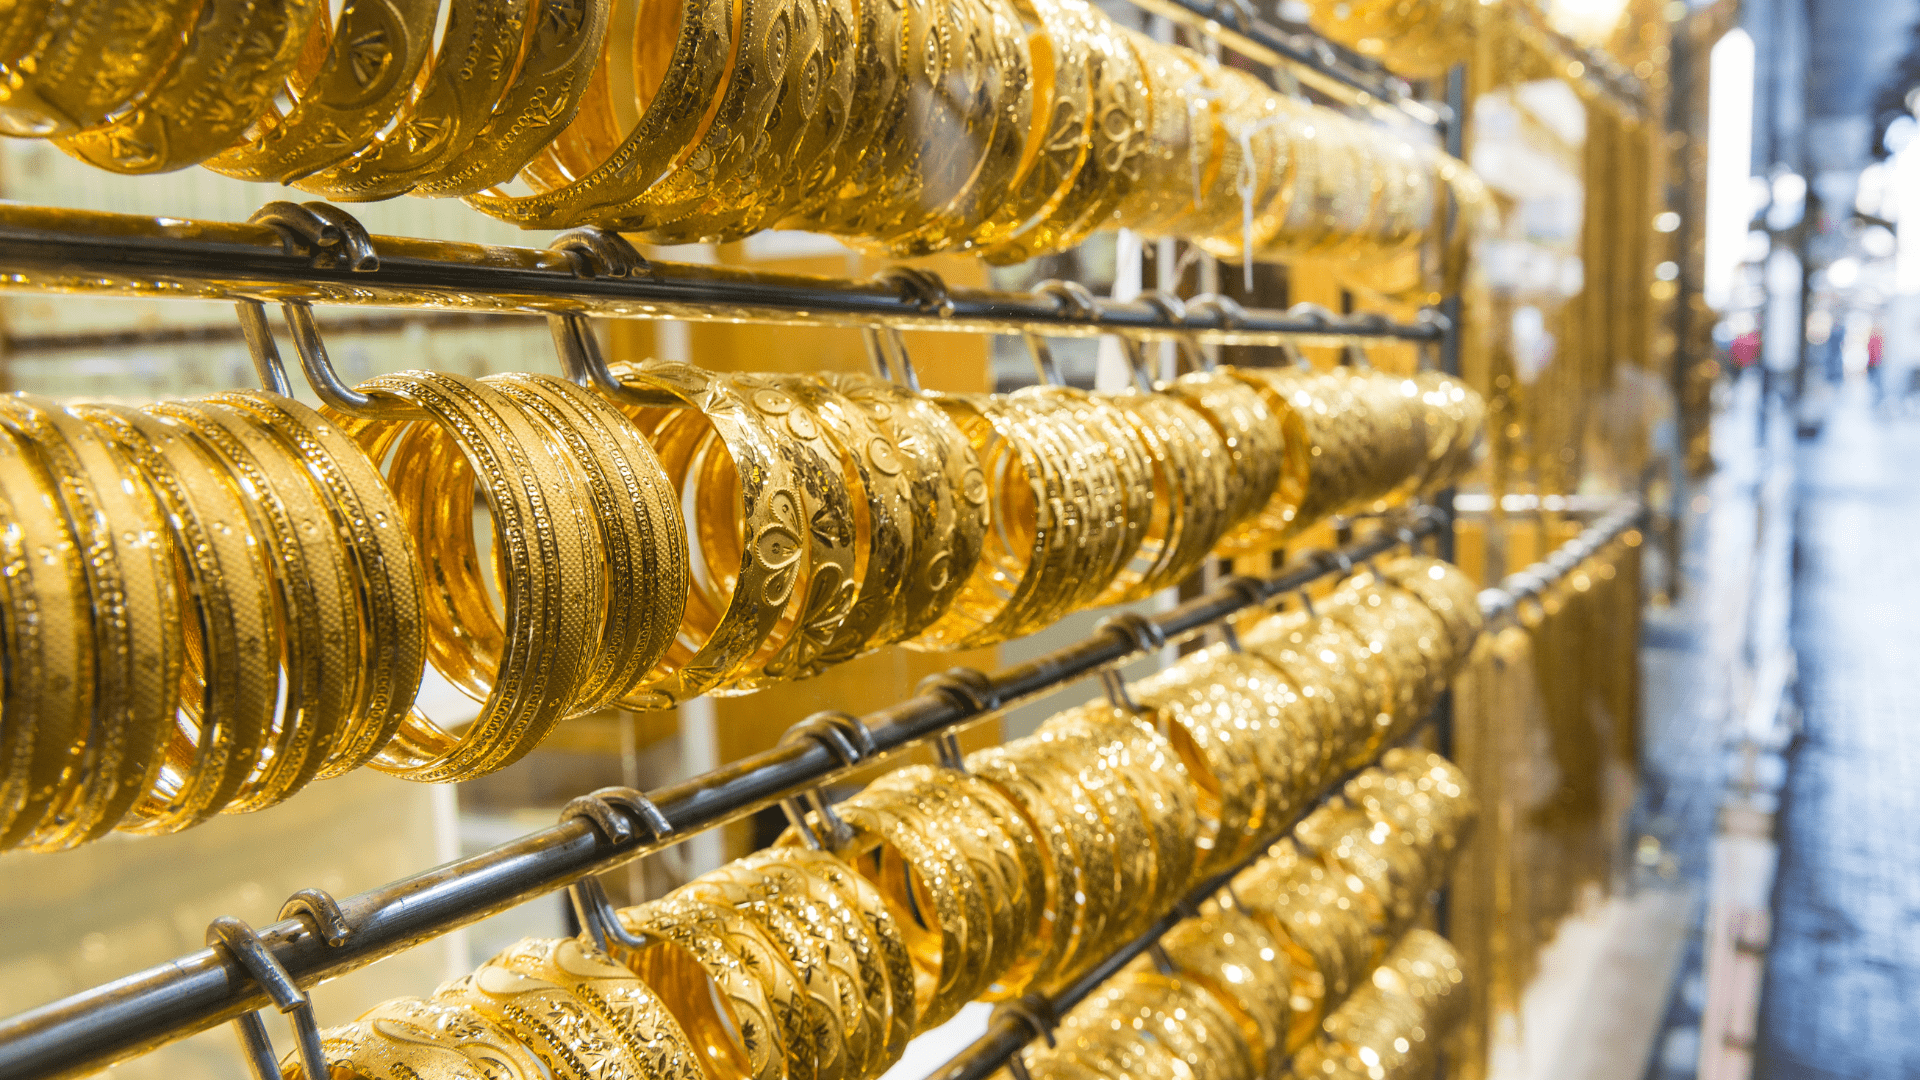 بازار طلا دبی؛ بازاری سنتی با تنوع بسیار در جواهرات